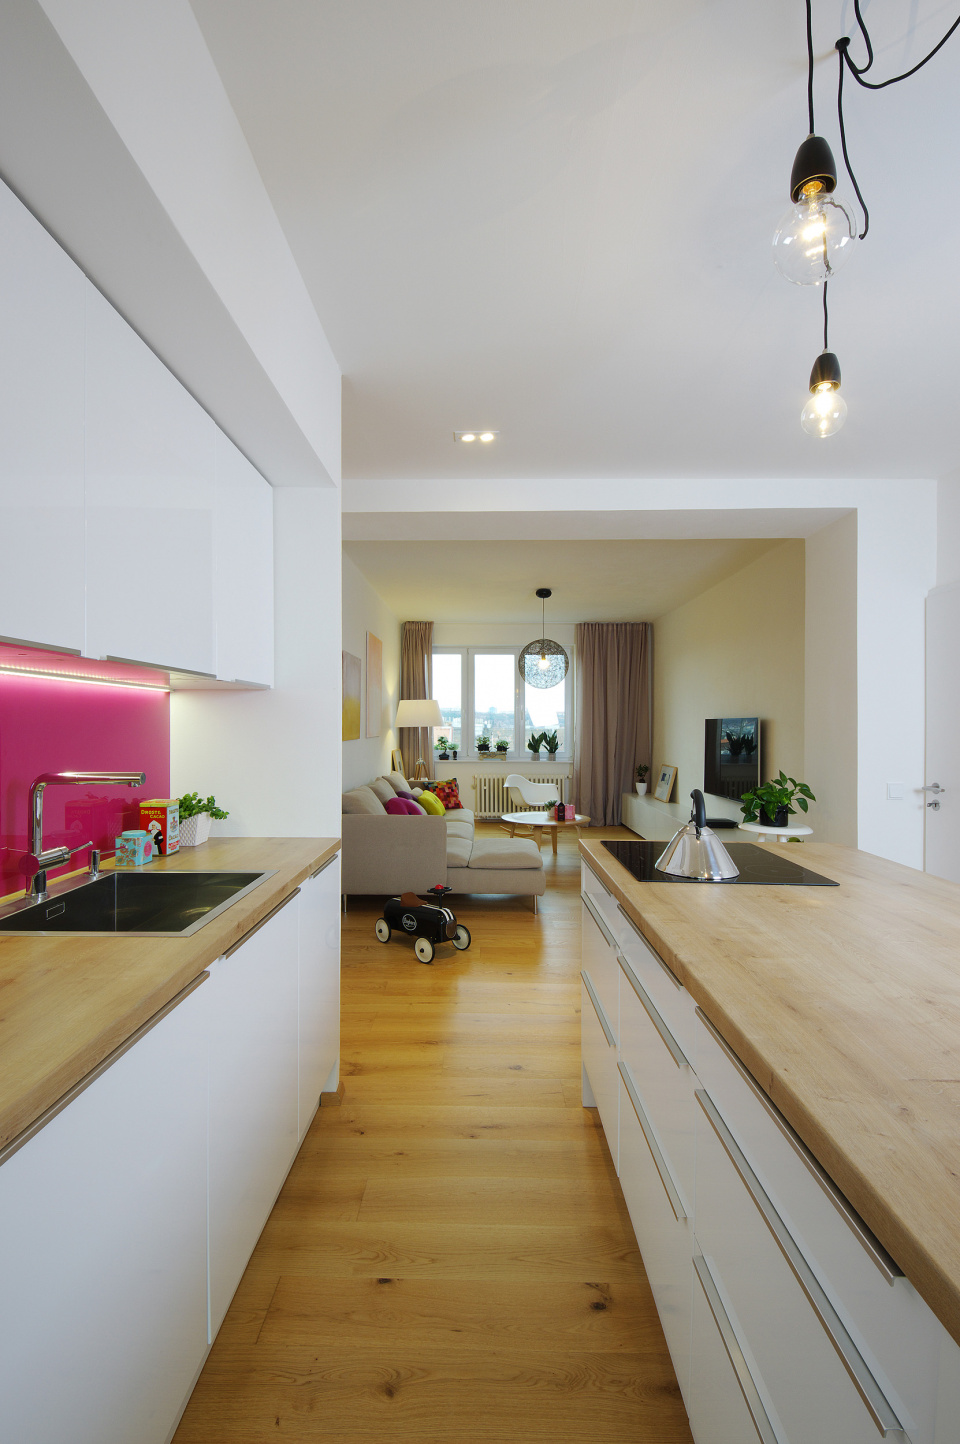 propojené prostory kuchyně s obývací částí | 1+1 atelier